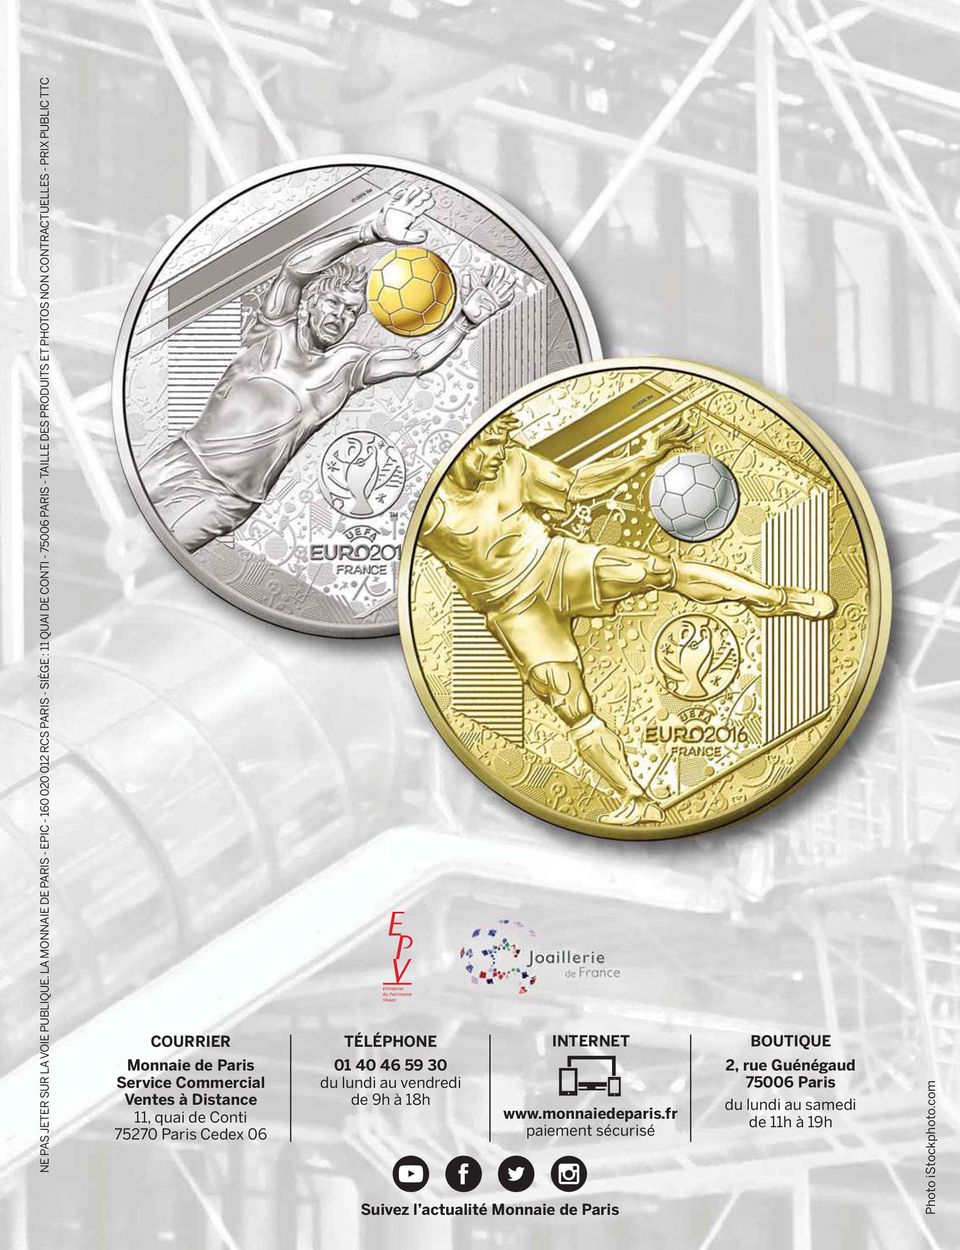 CONTRACTUELLES - PRIX PUBLIC TTC COURRIER Monnaie de Paris Service Commercial Ventes à Distance 11, quai de Conti 75270 Paris Cedex